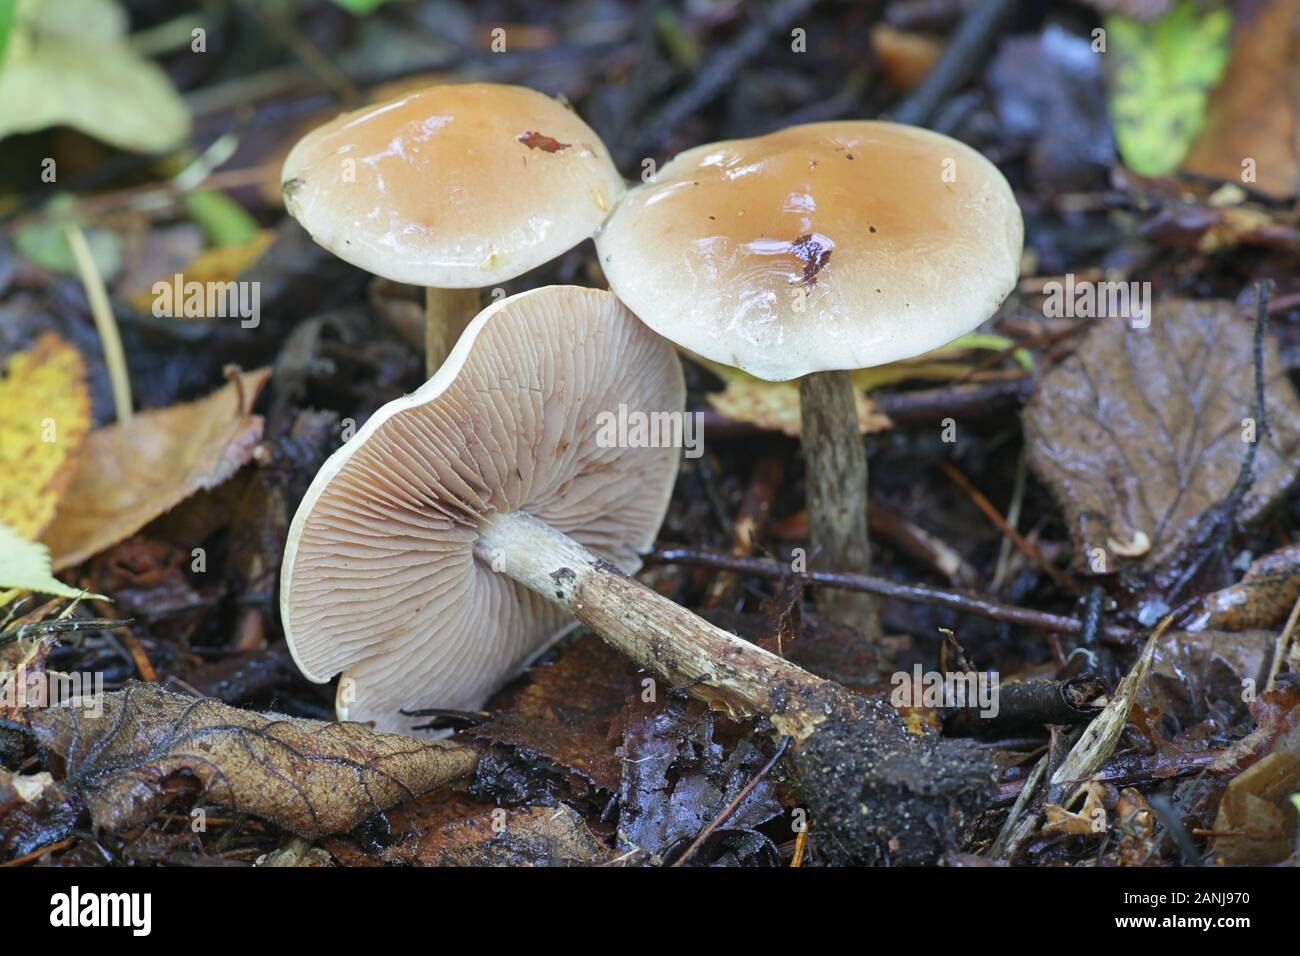 Hebeloma crustuliniforme, wie Gift pie oder Fee Kuchen bekannt, giftigen Pilze aus Finnland Stockfoto